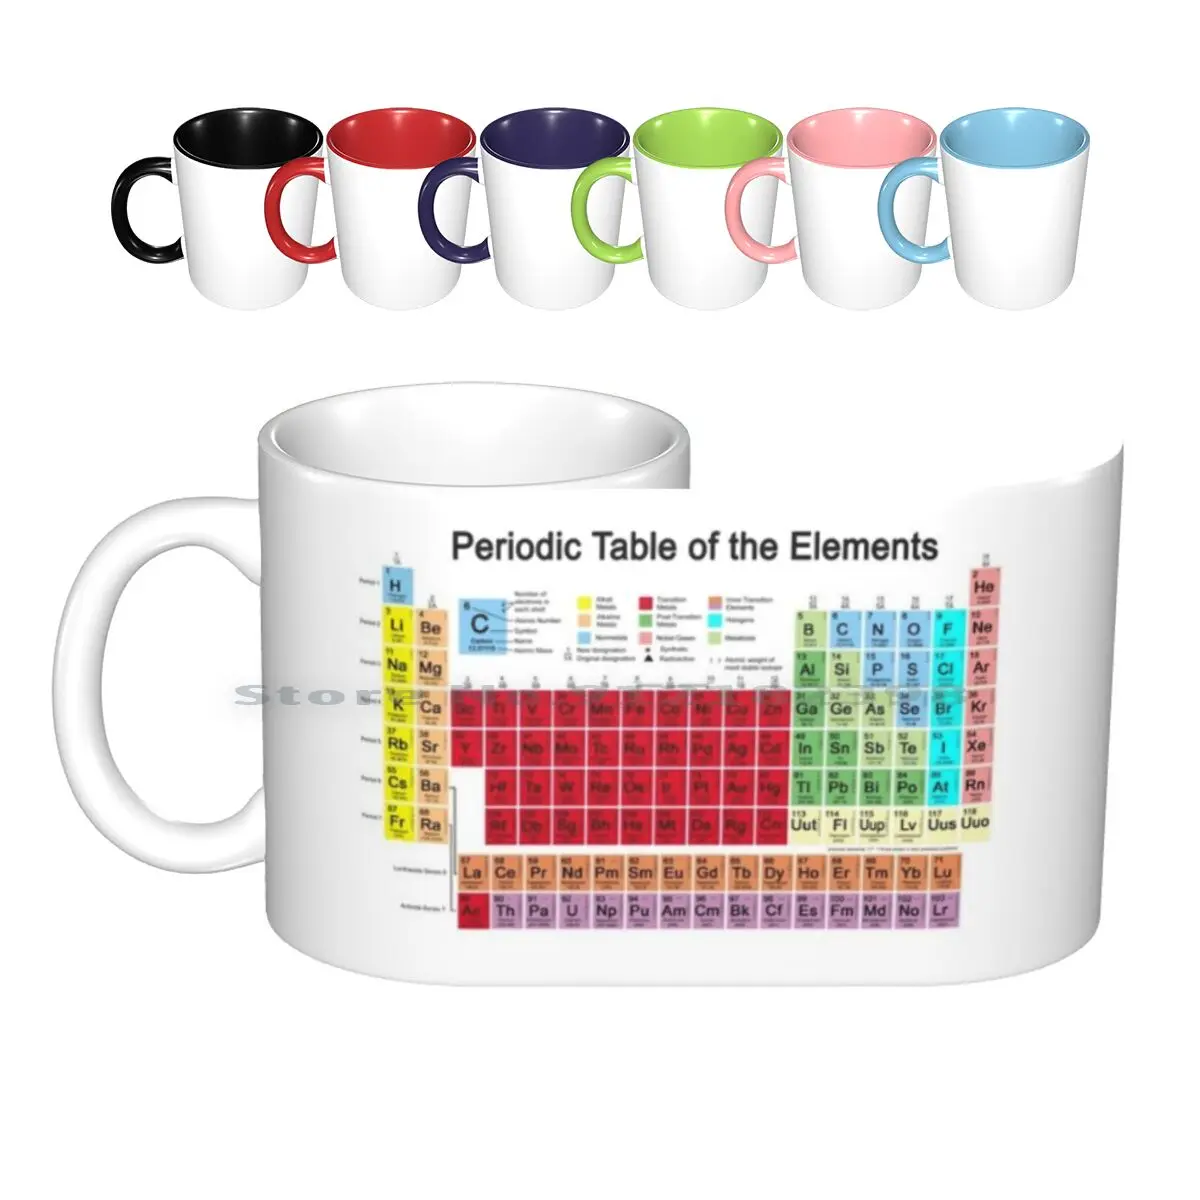 

Периодический стол керамических кружек, кофейные чашки, Кружка для молока и чая, атомы химической химии, копернициум дмитри Менделеев